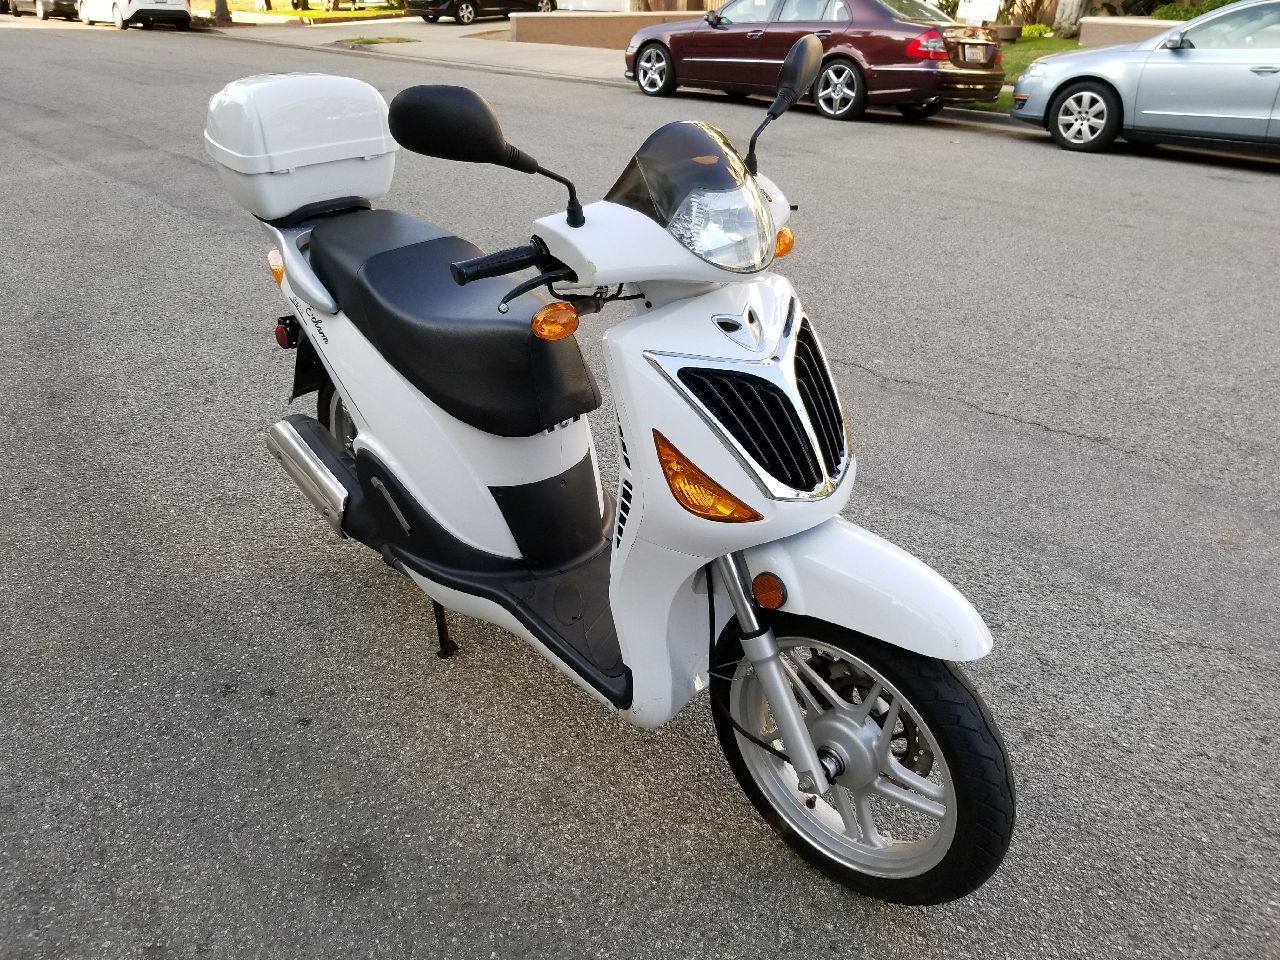 150cc Scooter Moped - like Vespa Yamaha Honda Suzuki Motorcycle